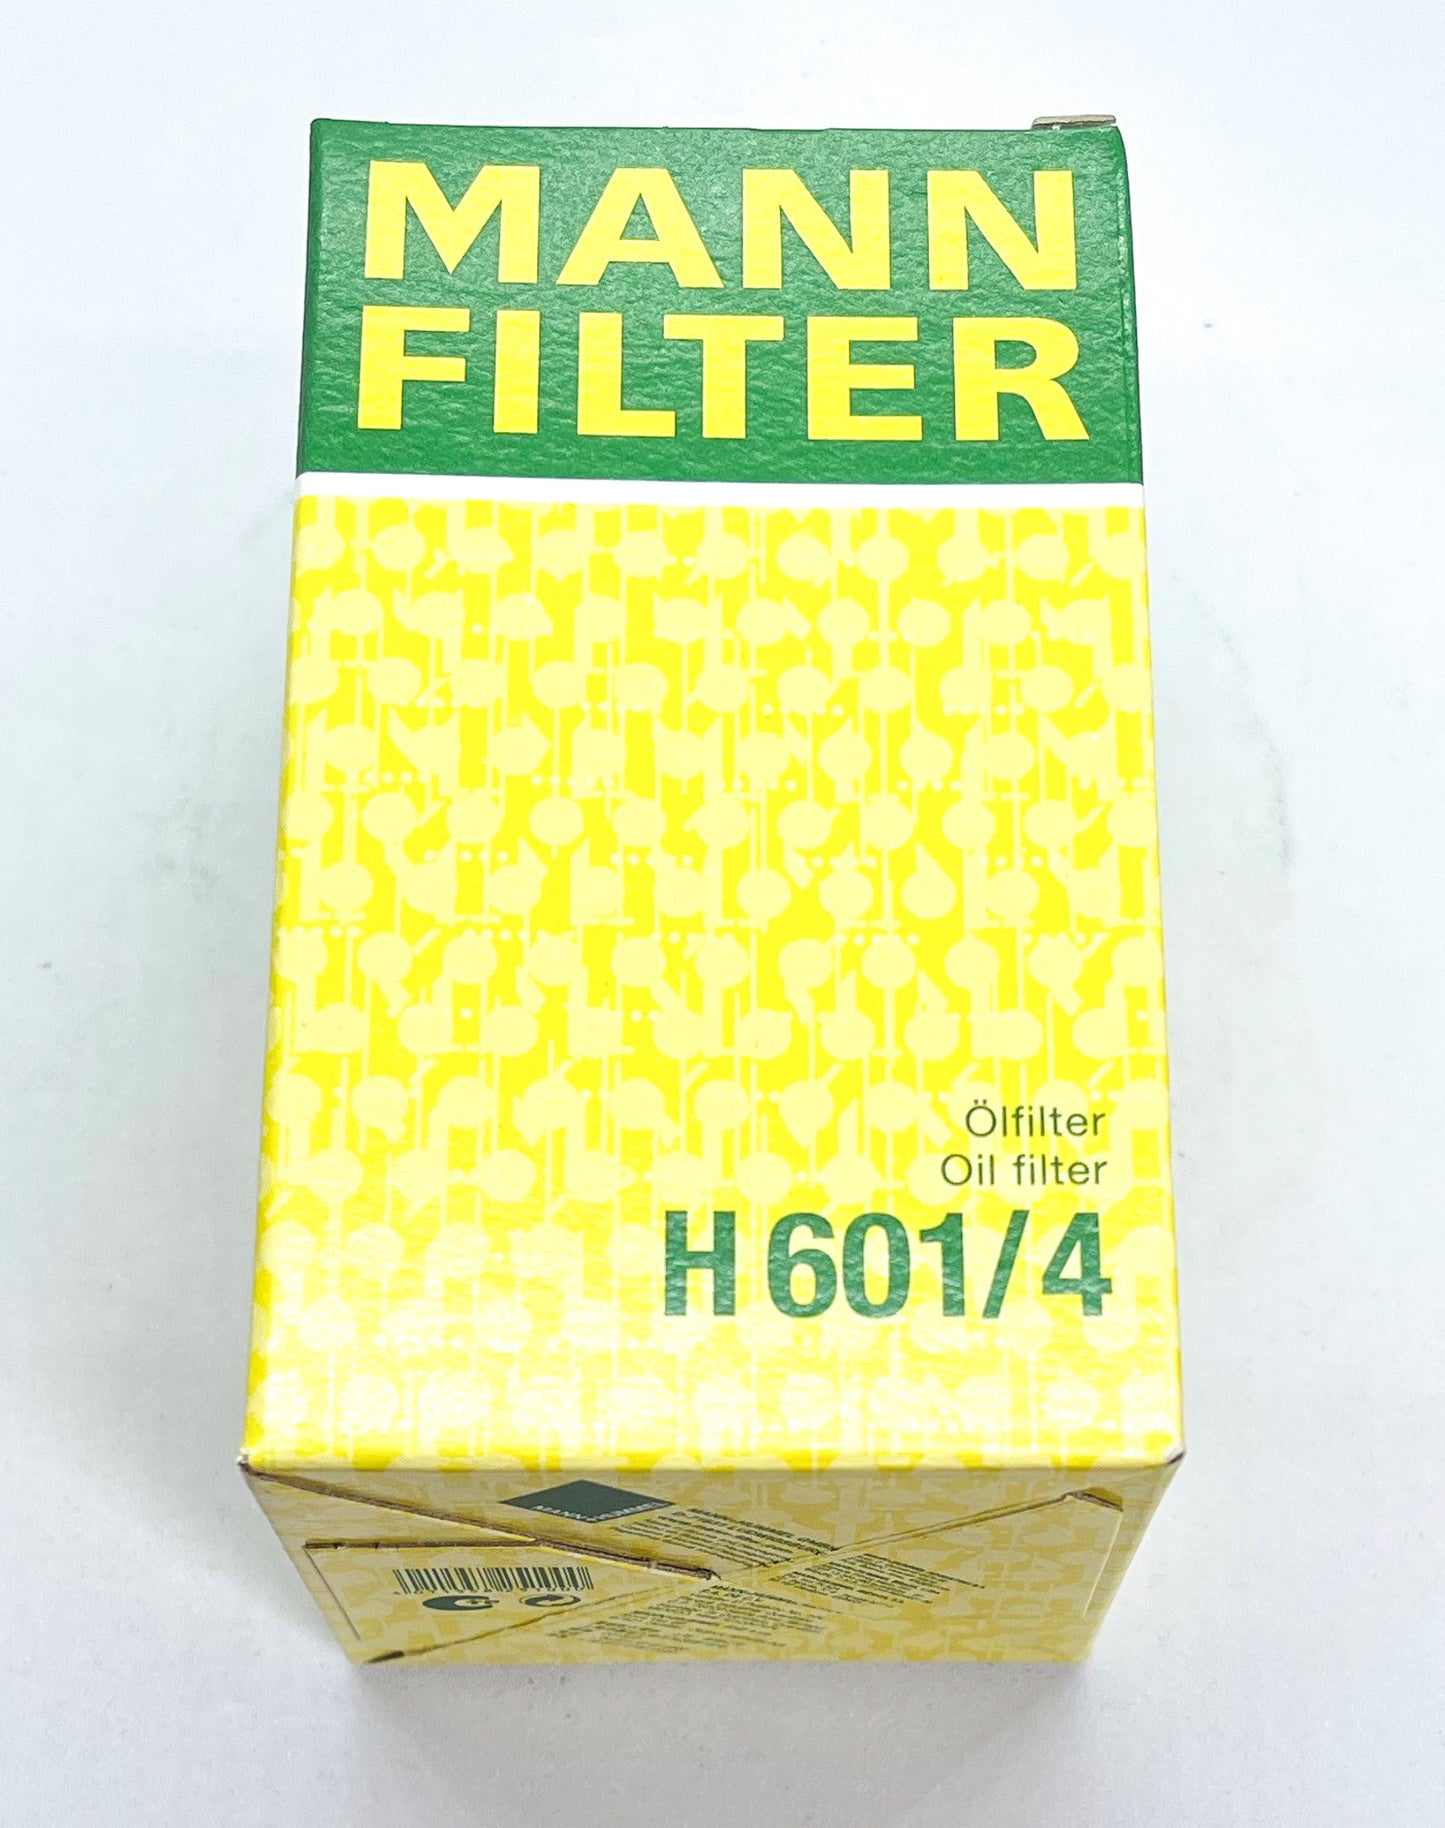 H 601/4 - MANN Filter